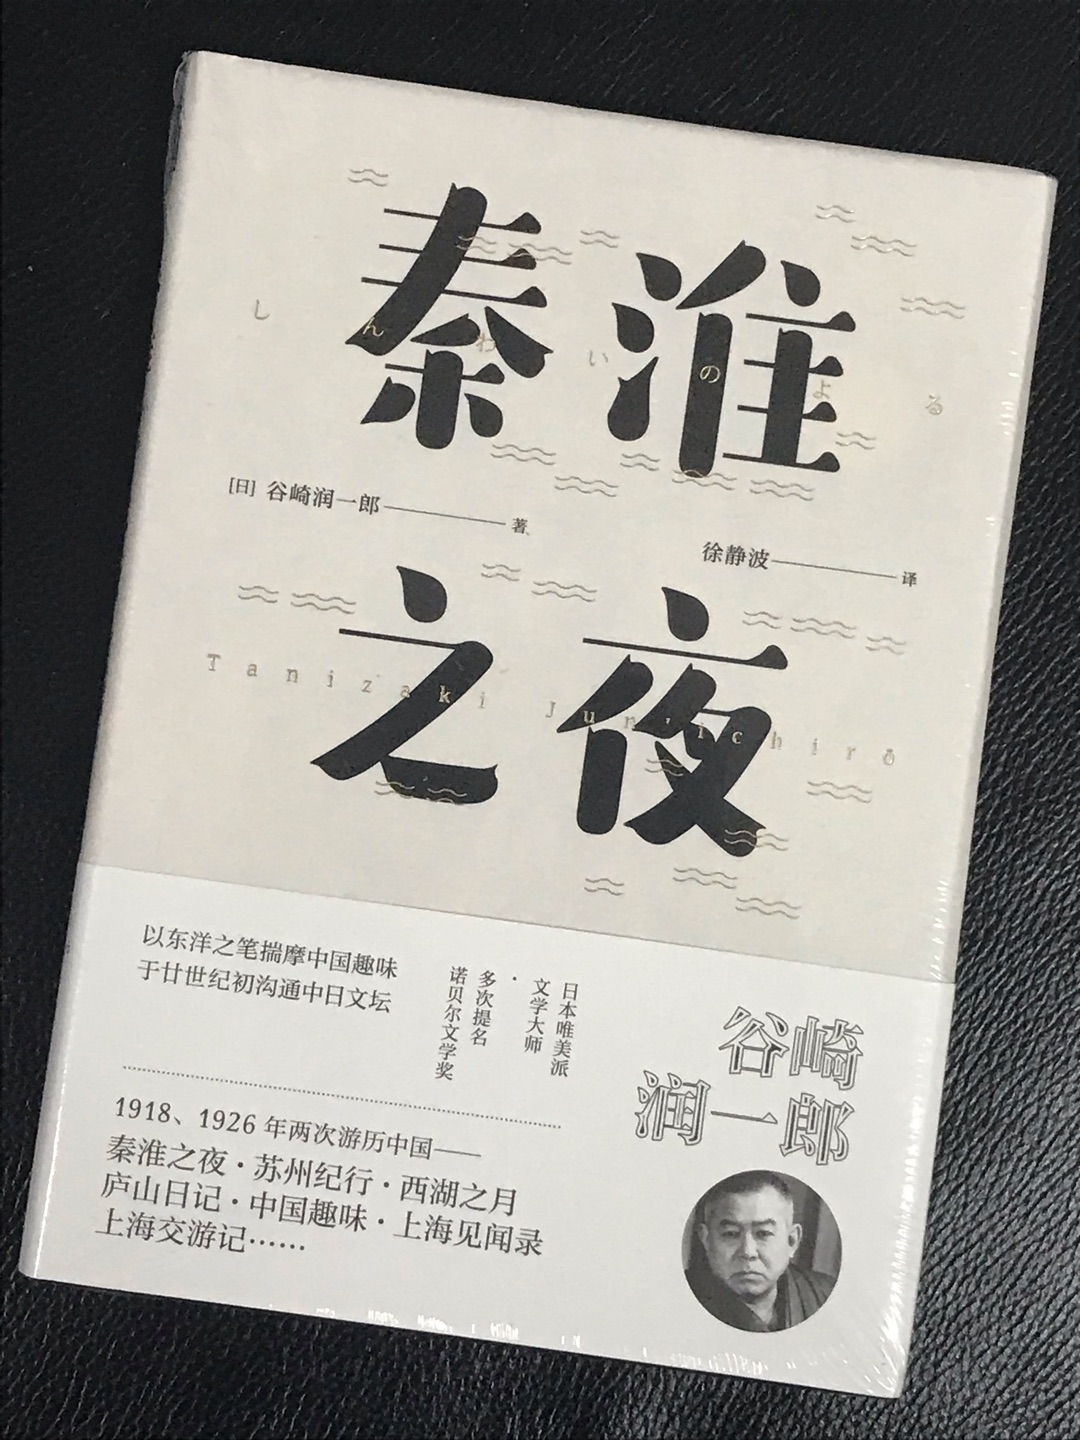 《秦淮之夜》所收录的散文随笔，记录了作者1918、1926年两次造访中国所见的风物民情，堪称继描写~文化风格的散文集《阴翳礼赞》之后的华夏篇。